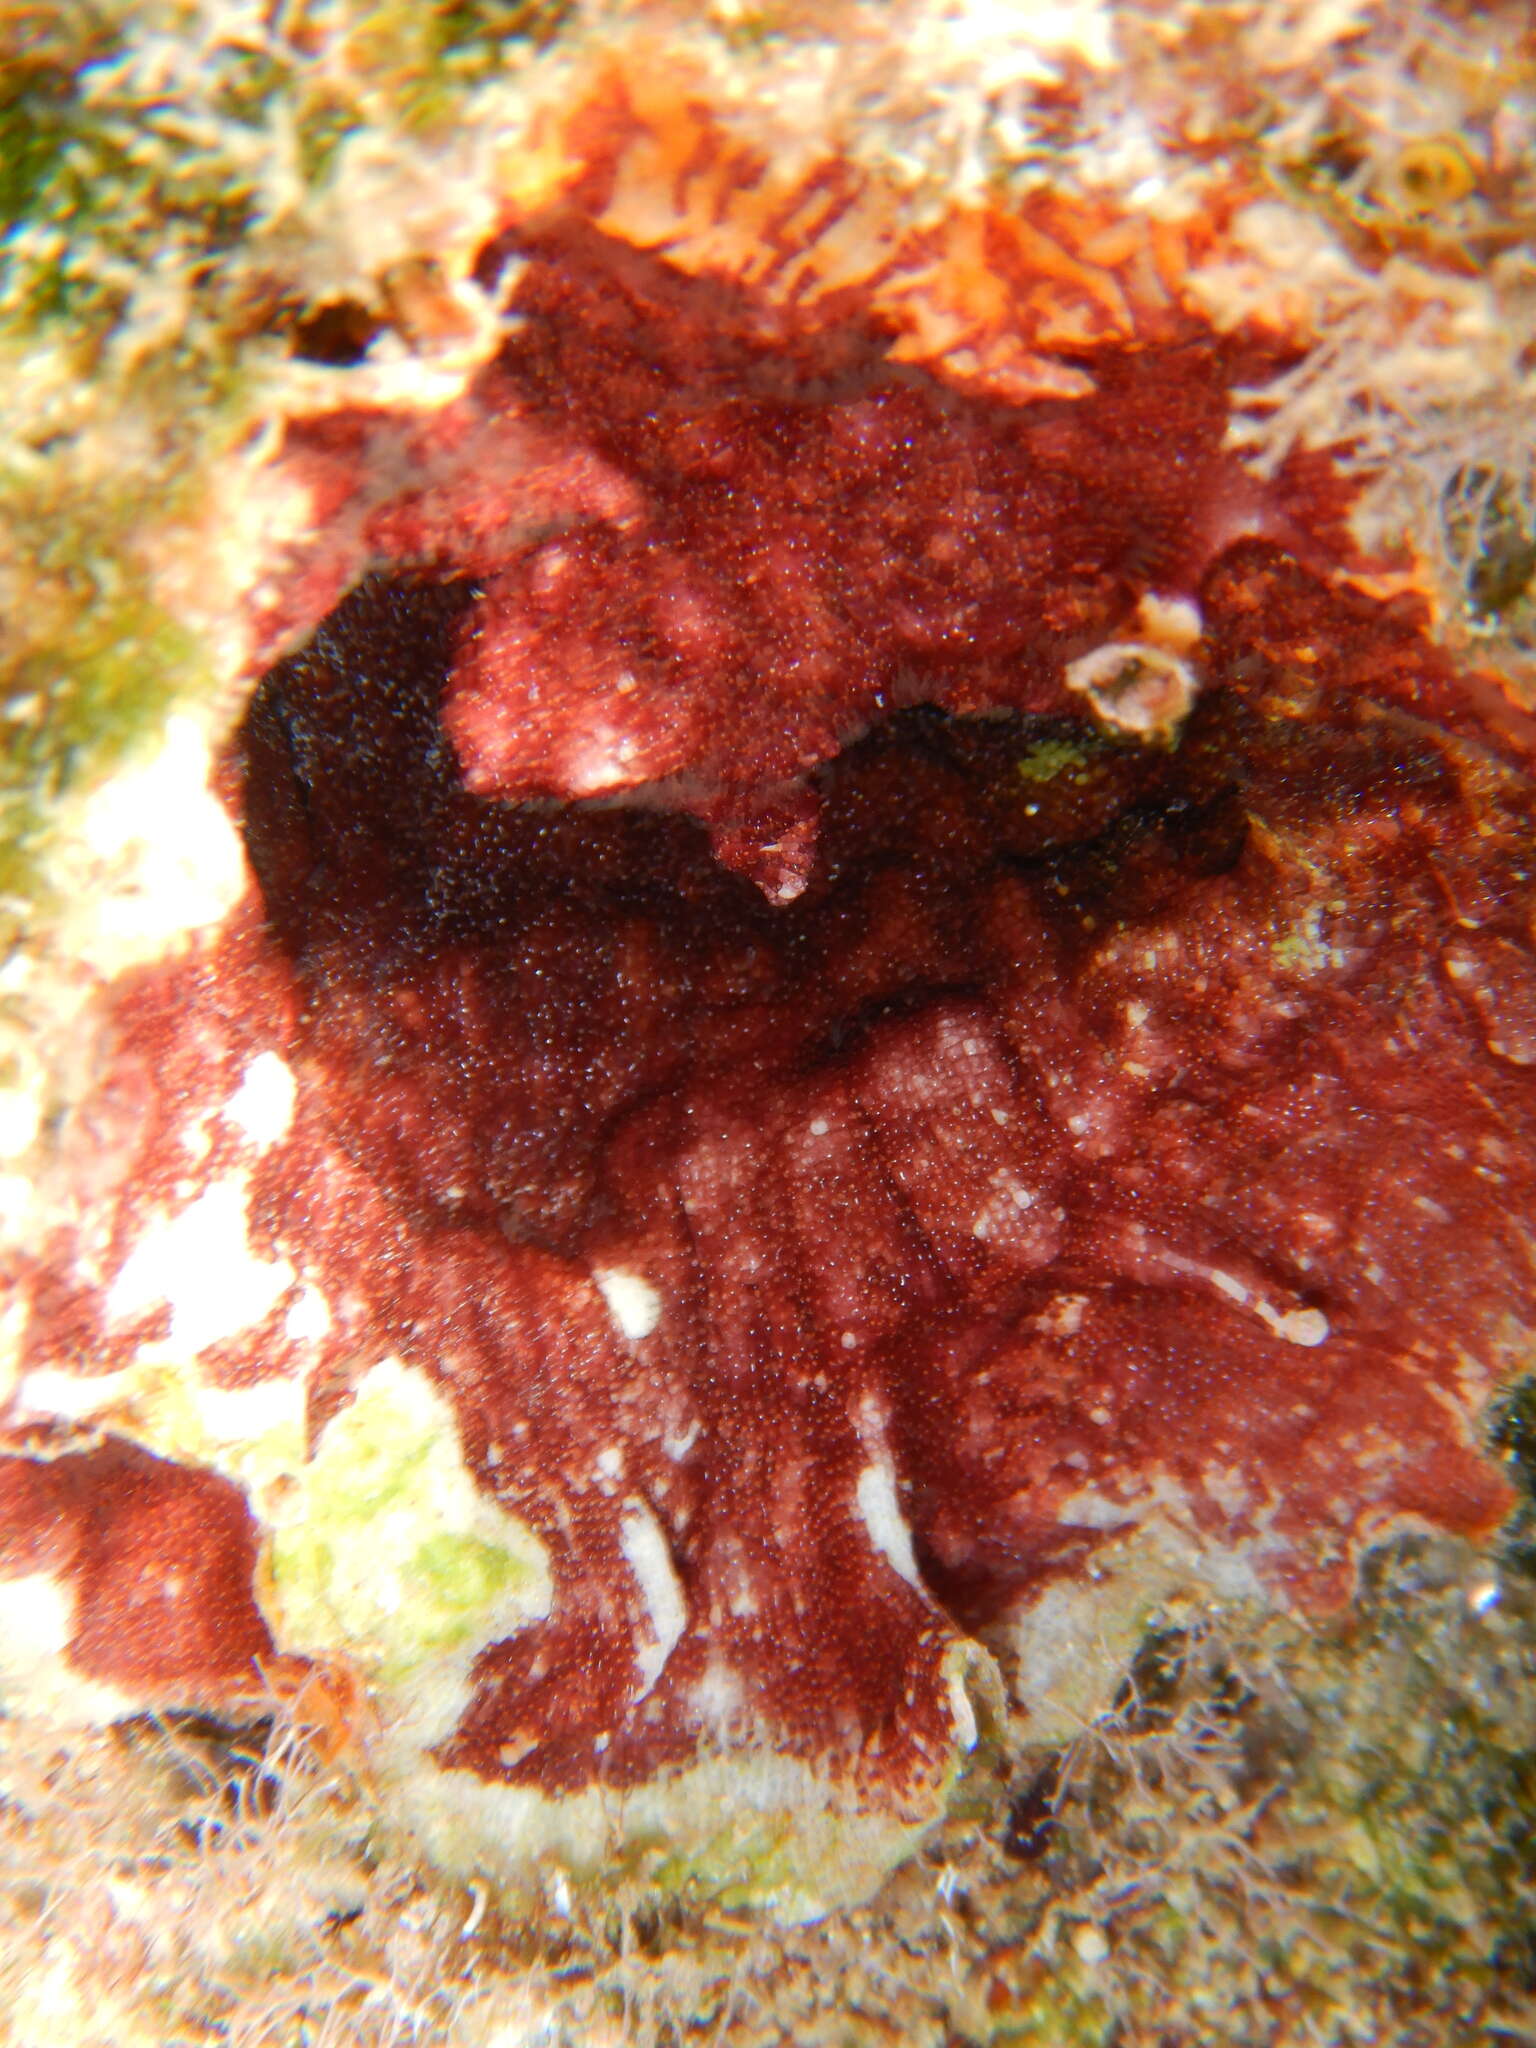 Image of blood-red encrusting bryozoan